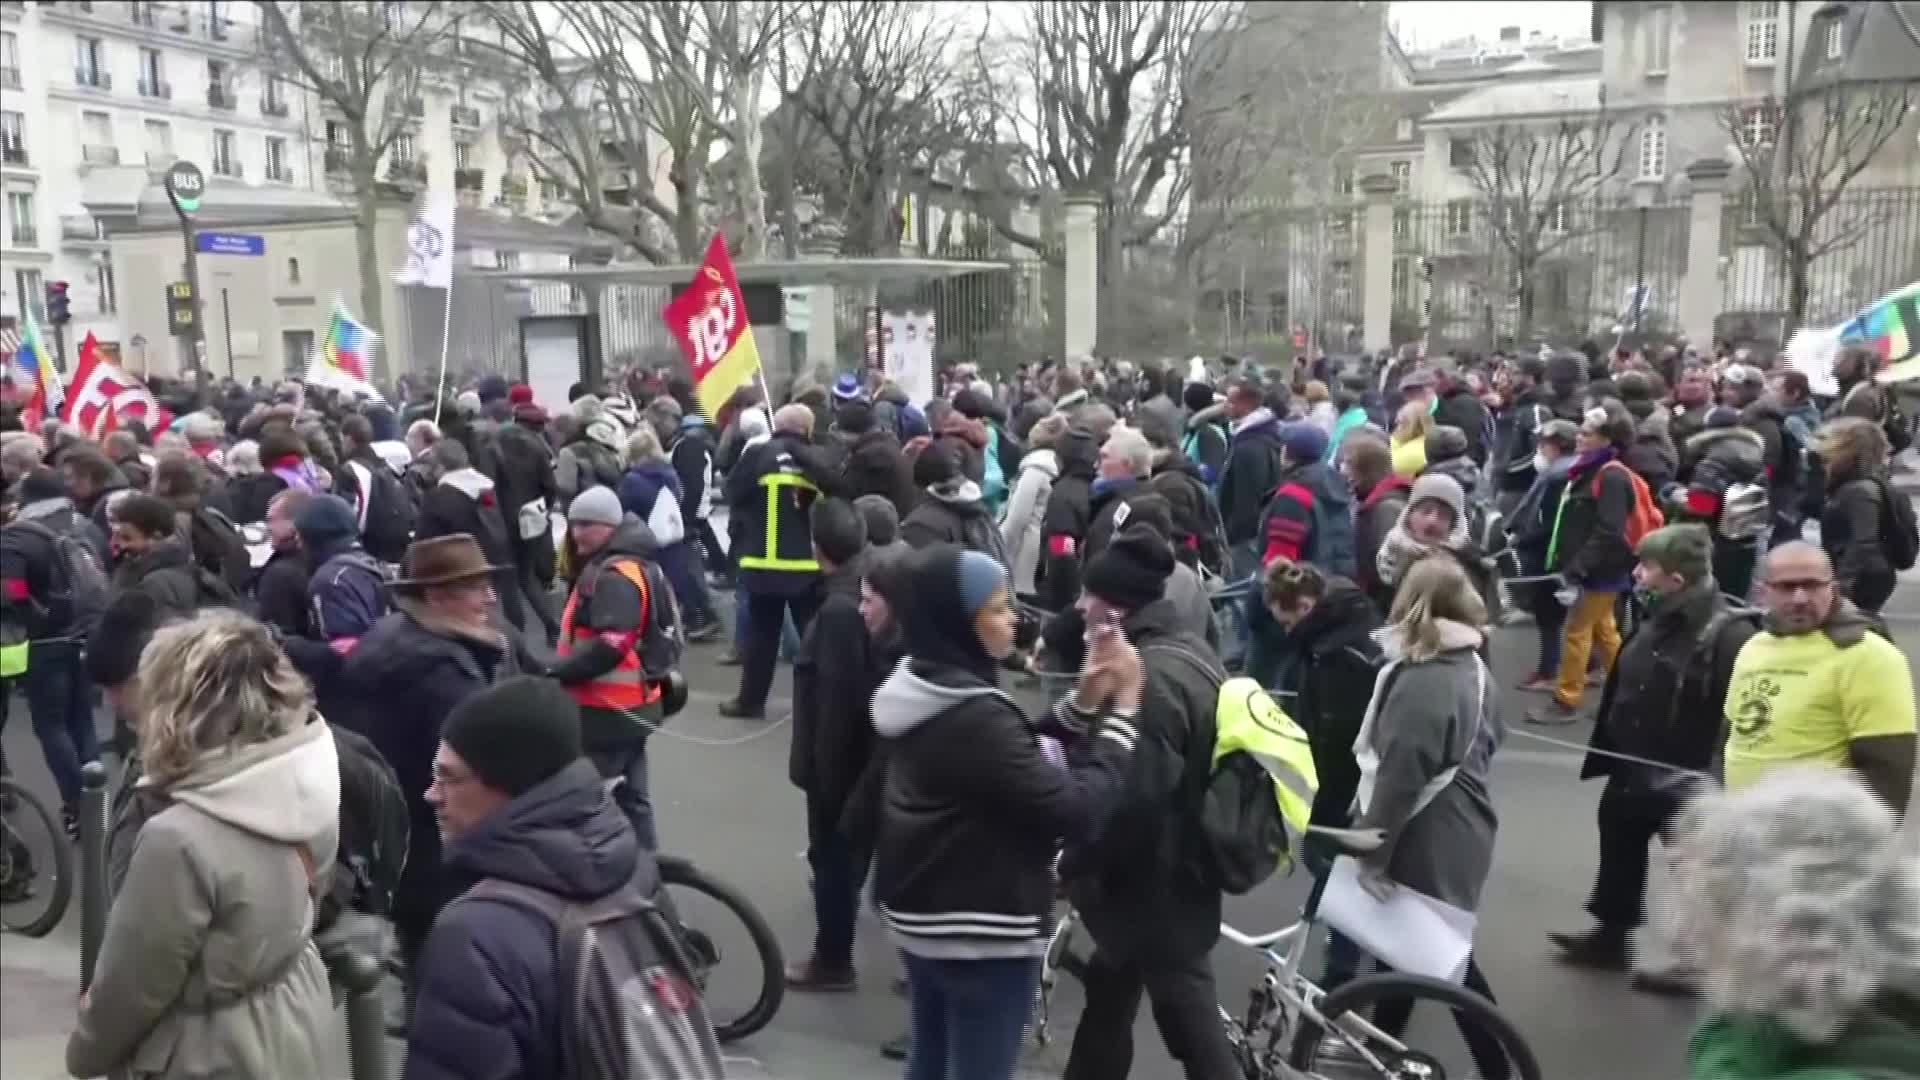 إضرابات في فرنسا احتجاجا على مشروع تعديل نظام التقاعد والنقابات تشيد بحركة تعبئة تاريخية (3)